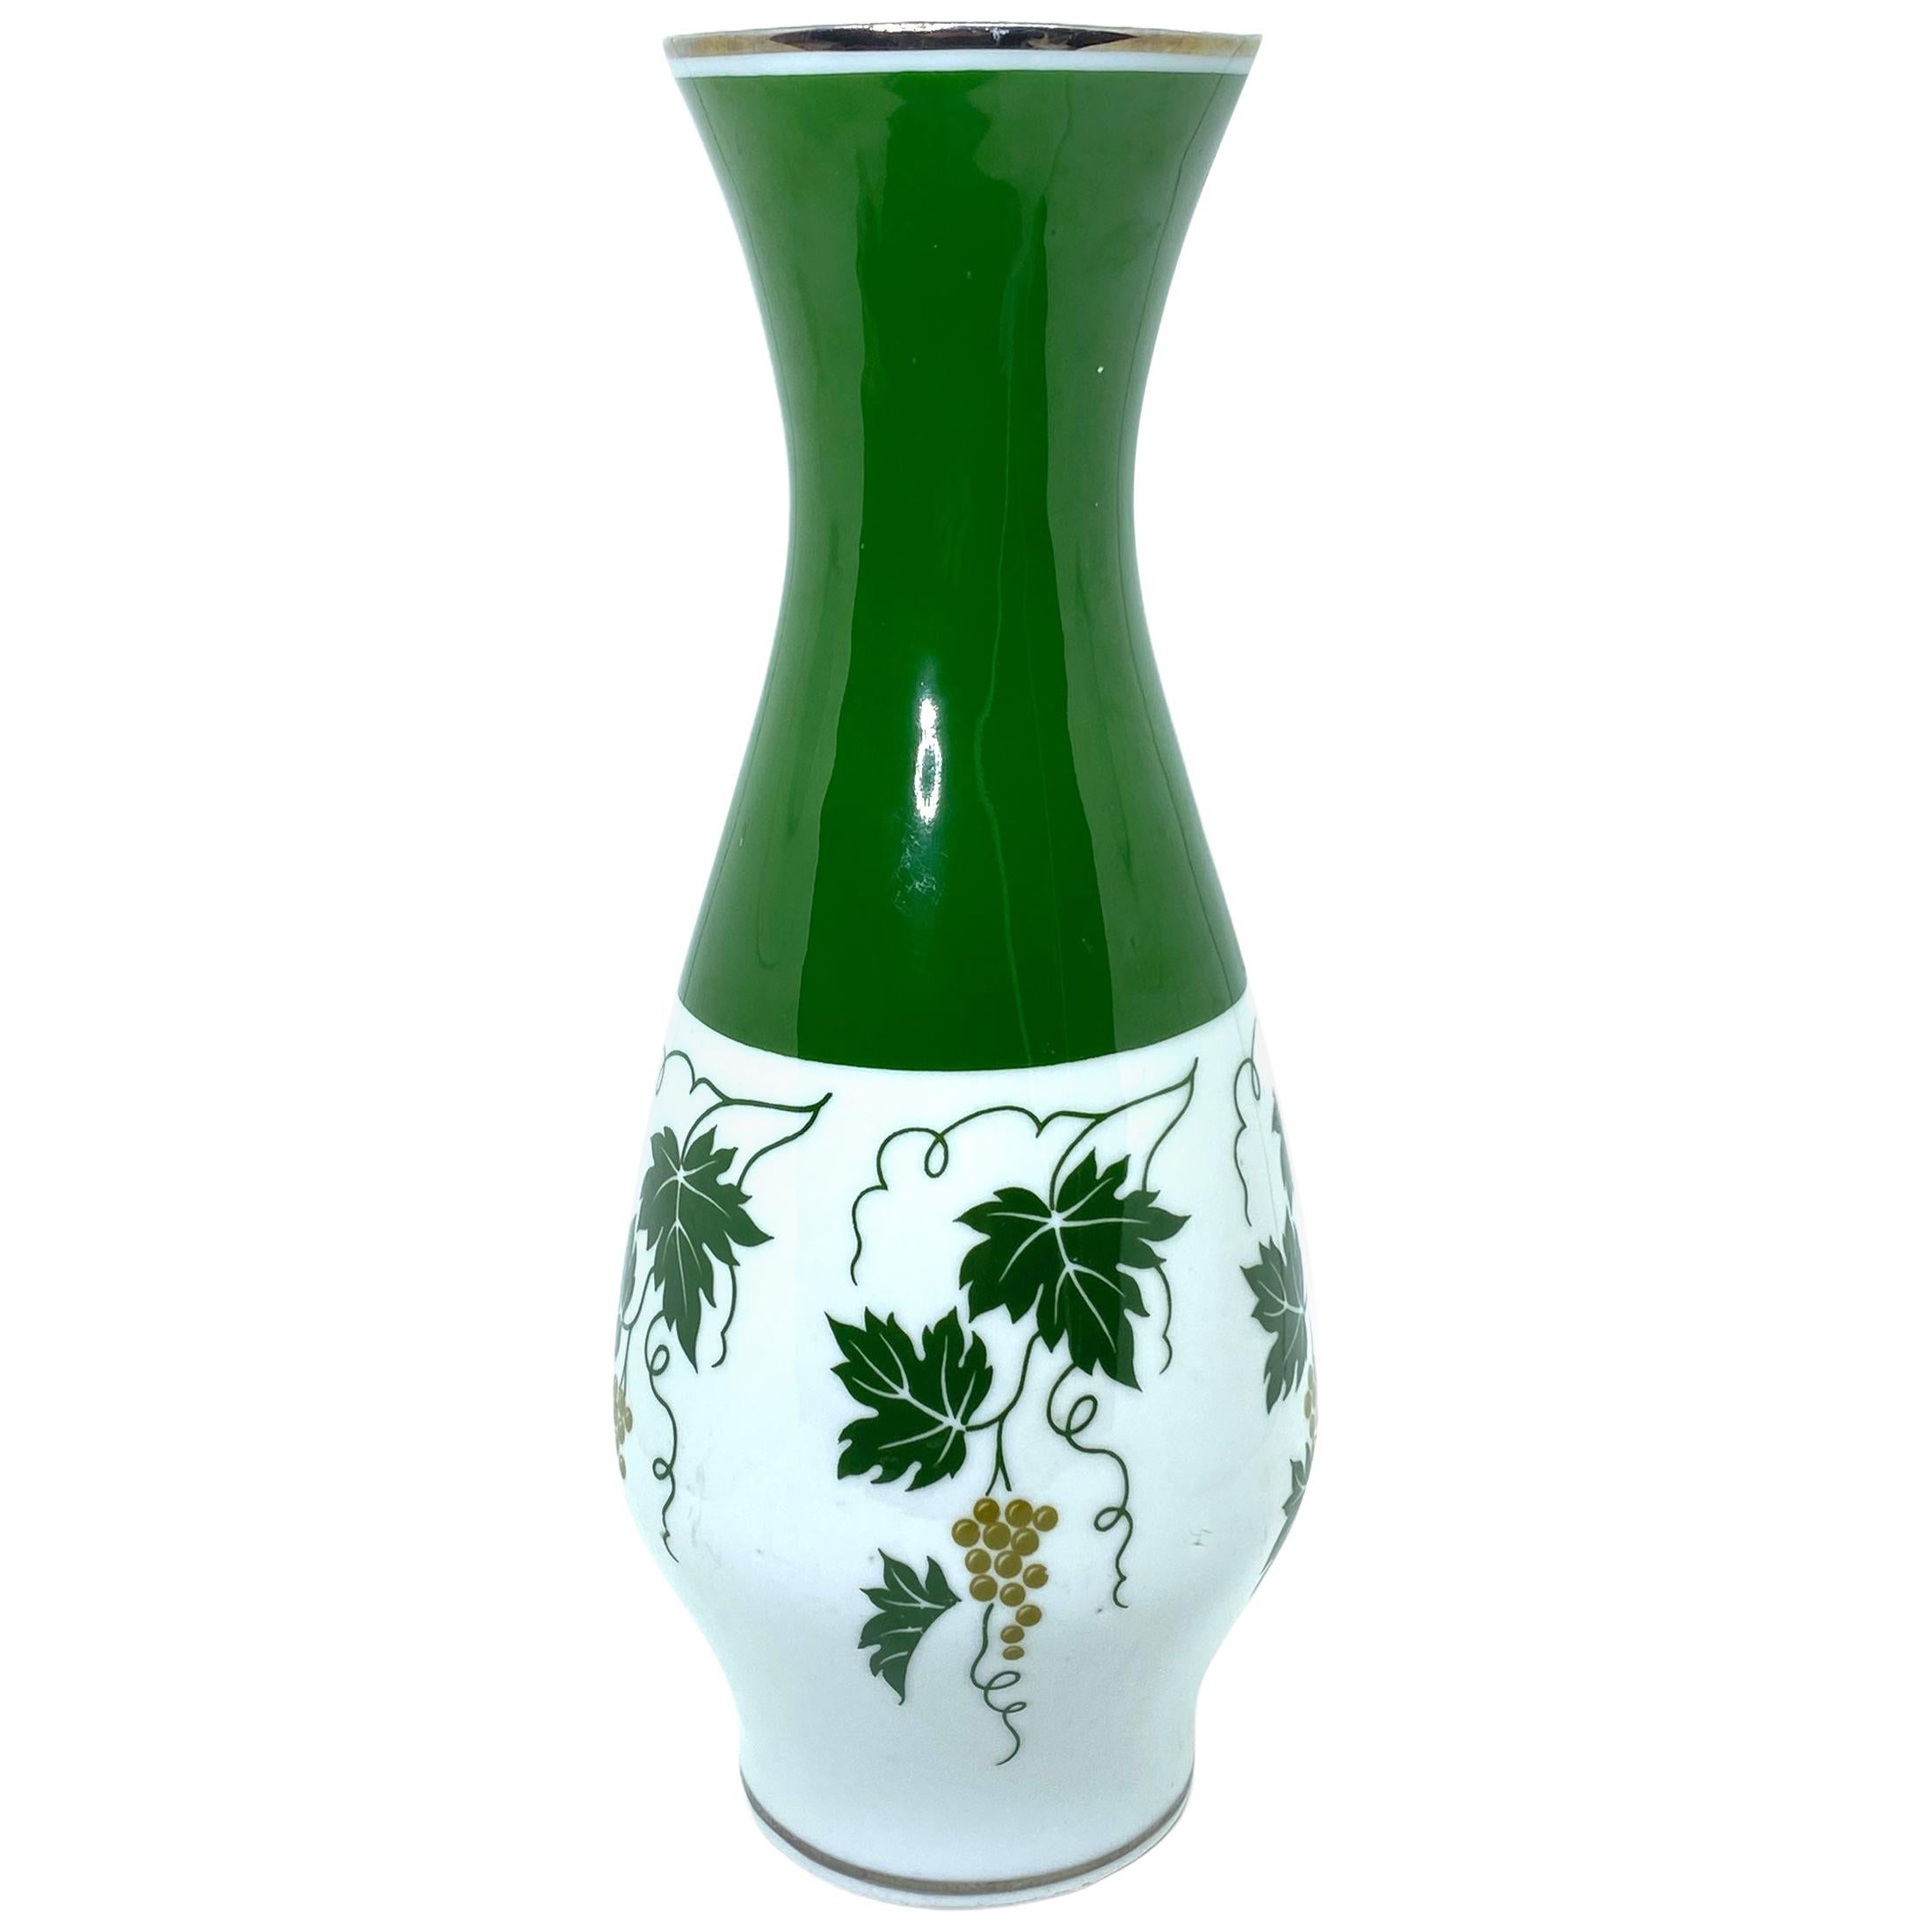 Grapevine Tendril Vase by Spechtsbrunn Germany, German, 1950s